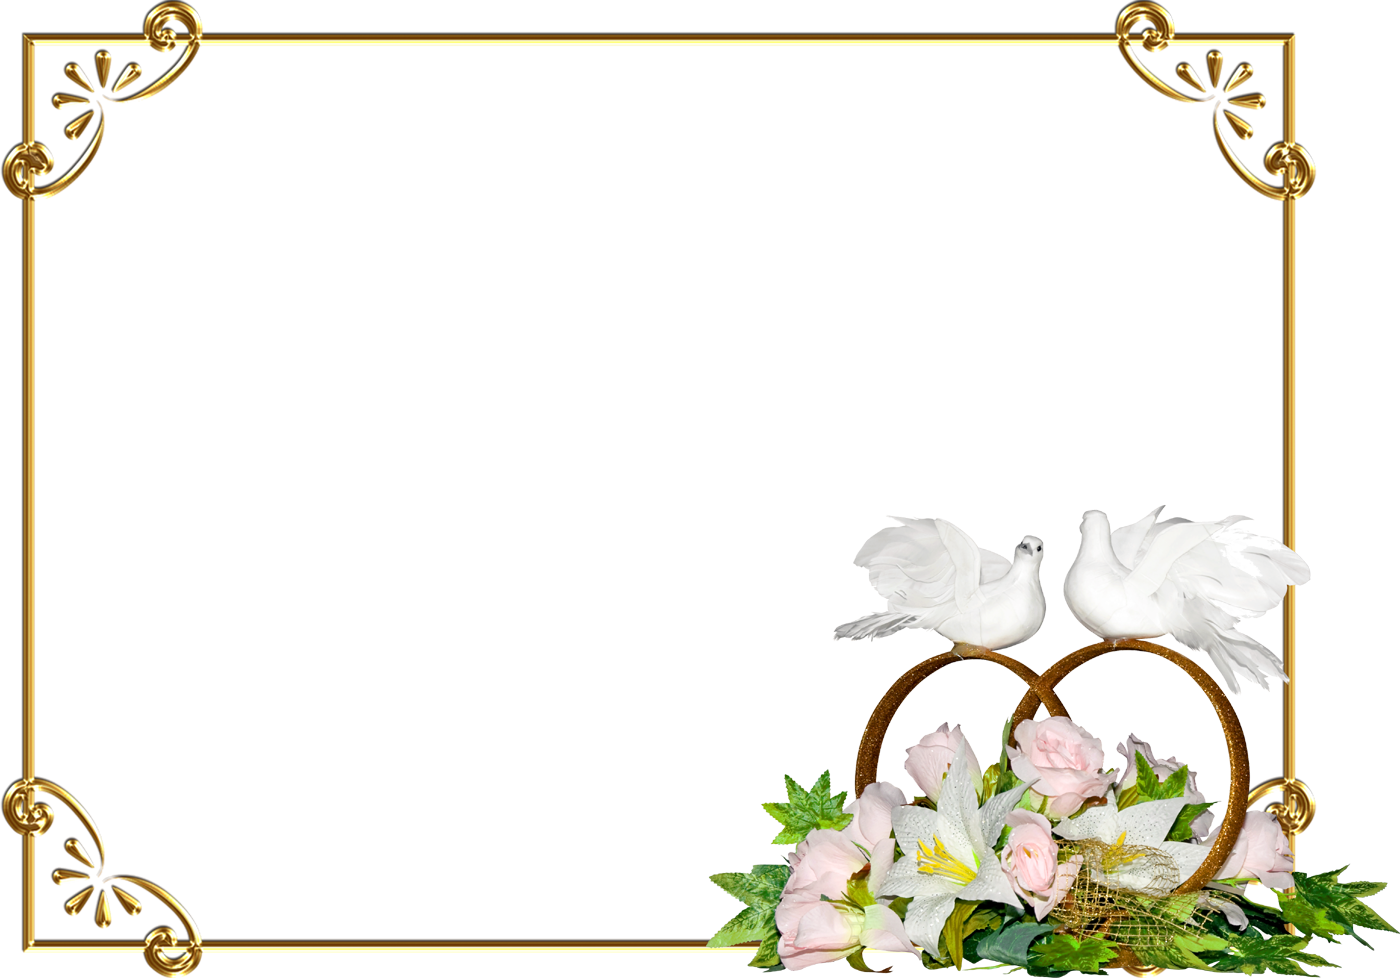 花の写真 フリー素材 フレーム枠no 076 バラ ユリ 白い鳥